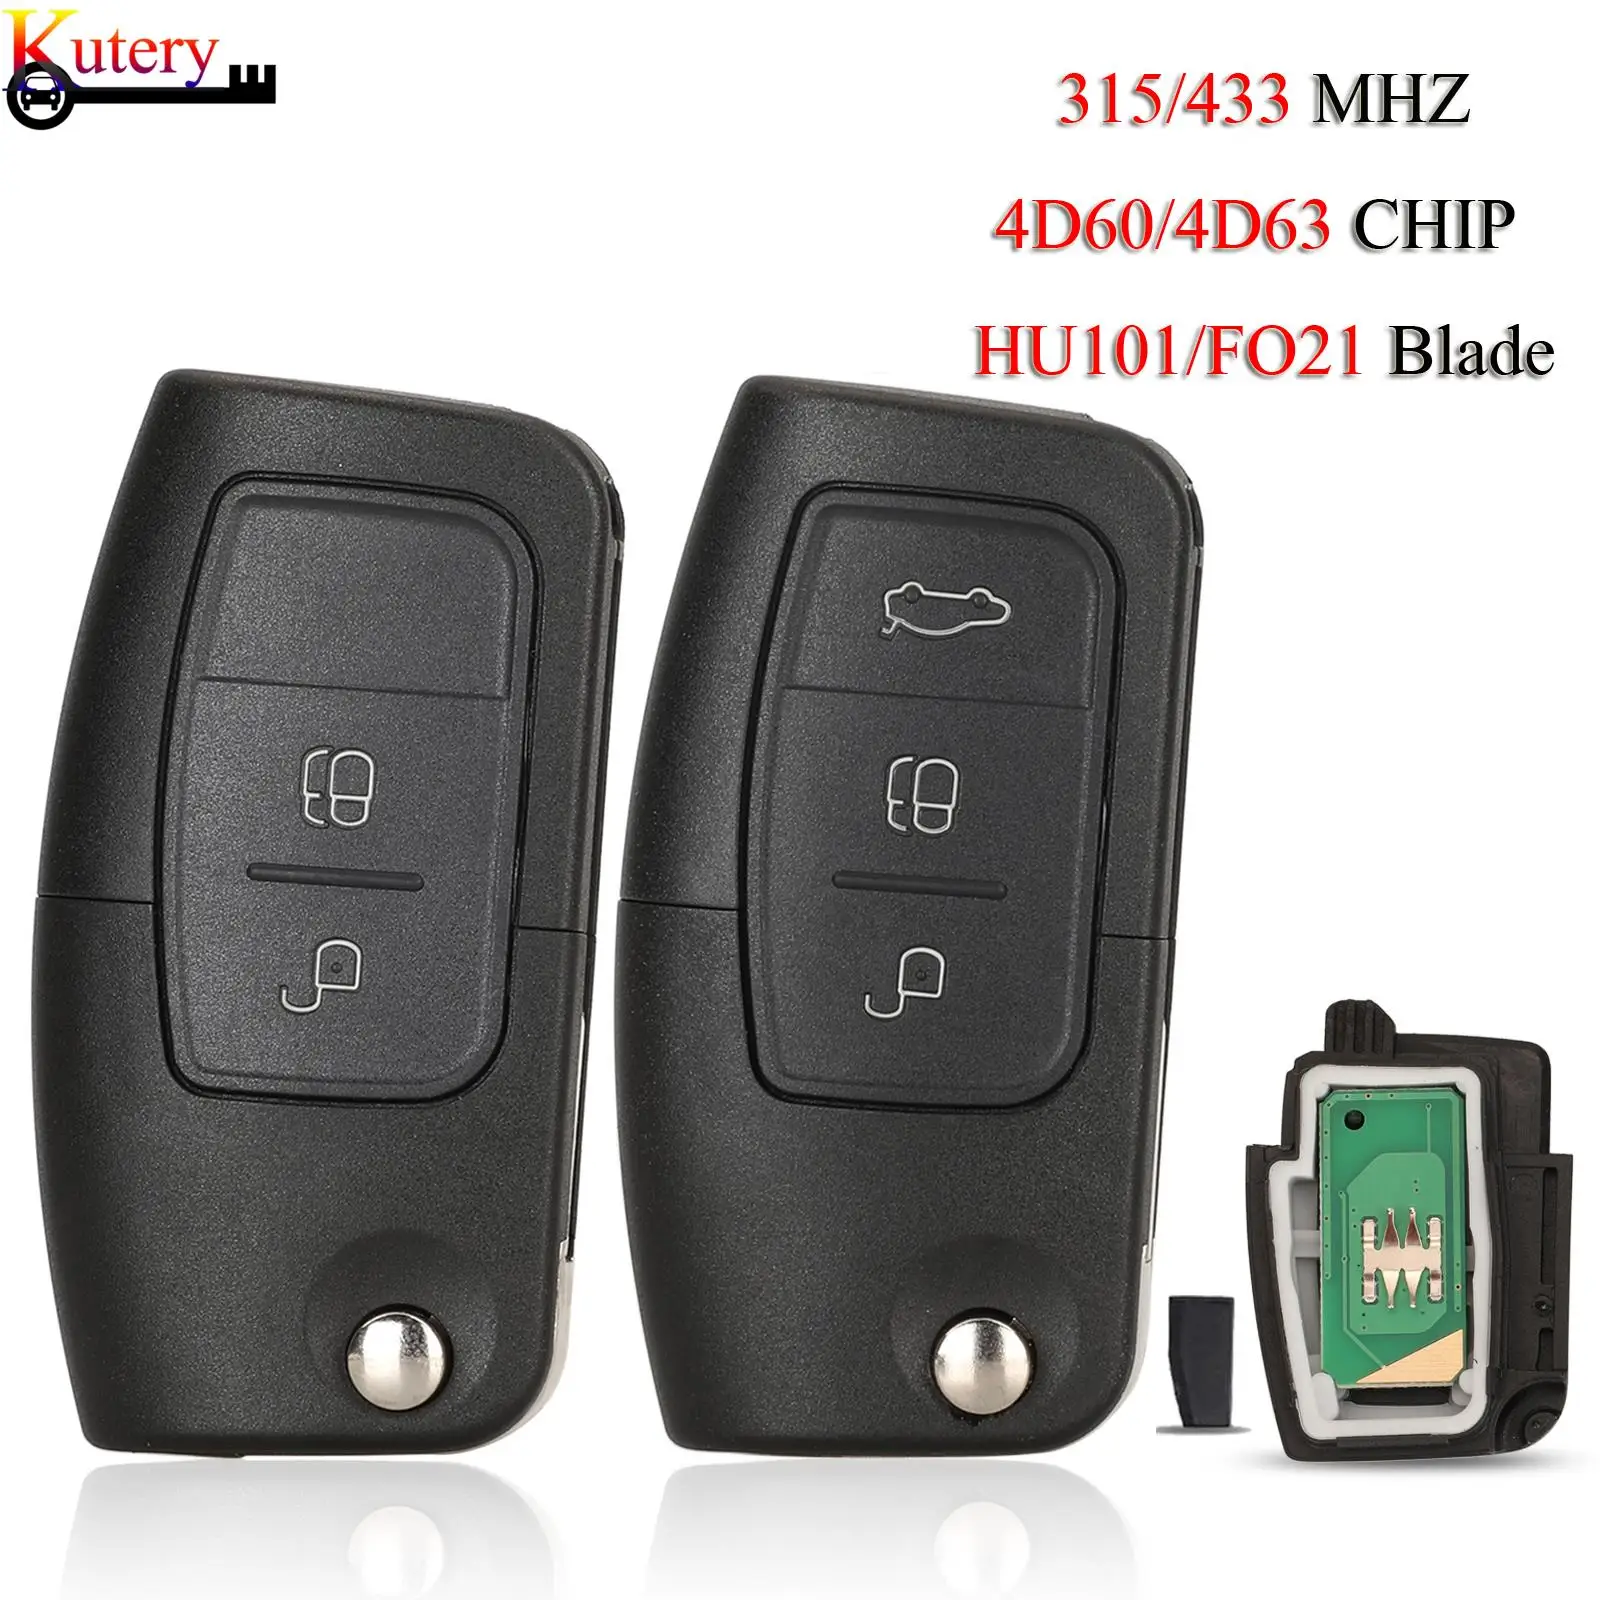 

Jingyuqin дистанционный умный Автомобильный ключ для Ford Fusion, Focus, Mondeo, Fiesta, Galaxy 2/3 кнопки 433 МГц 4D60/4D63-40/80Bit чип HU101/FO21